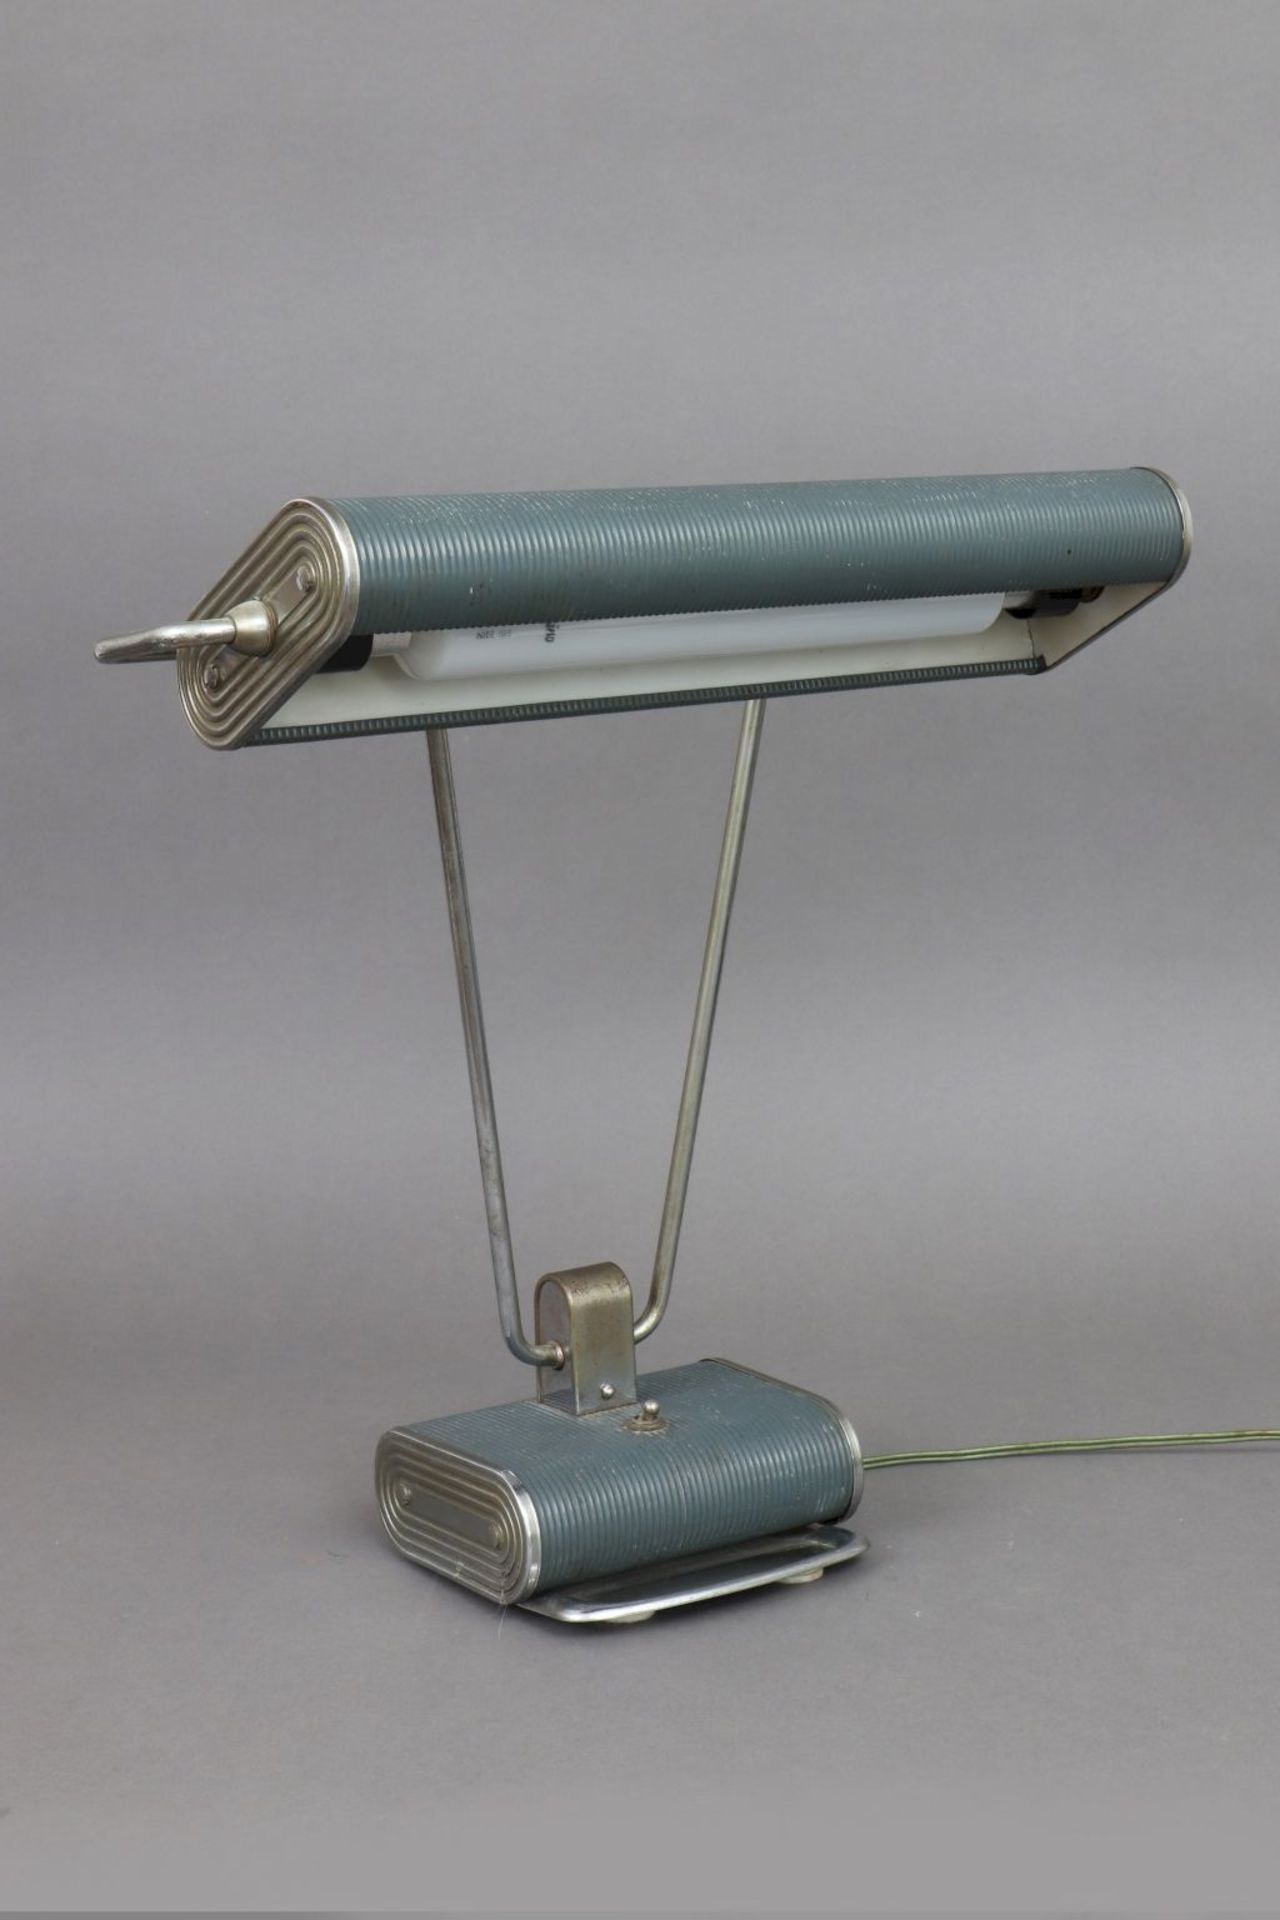 EILEEN GRAY Schreibtischlampe ¨Jumo¨ (Modell 71)frühe, grau lackierte Ausführung, H ca. 40c - Bild 2 aus 4